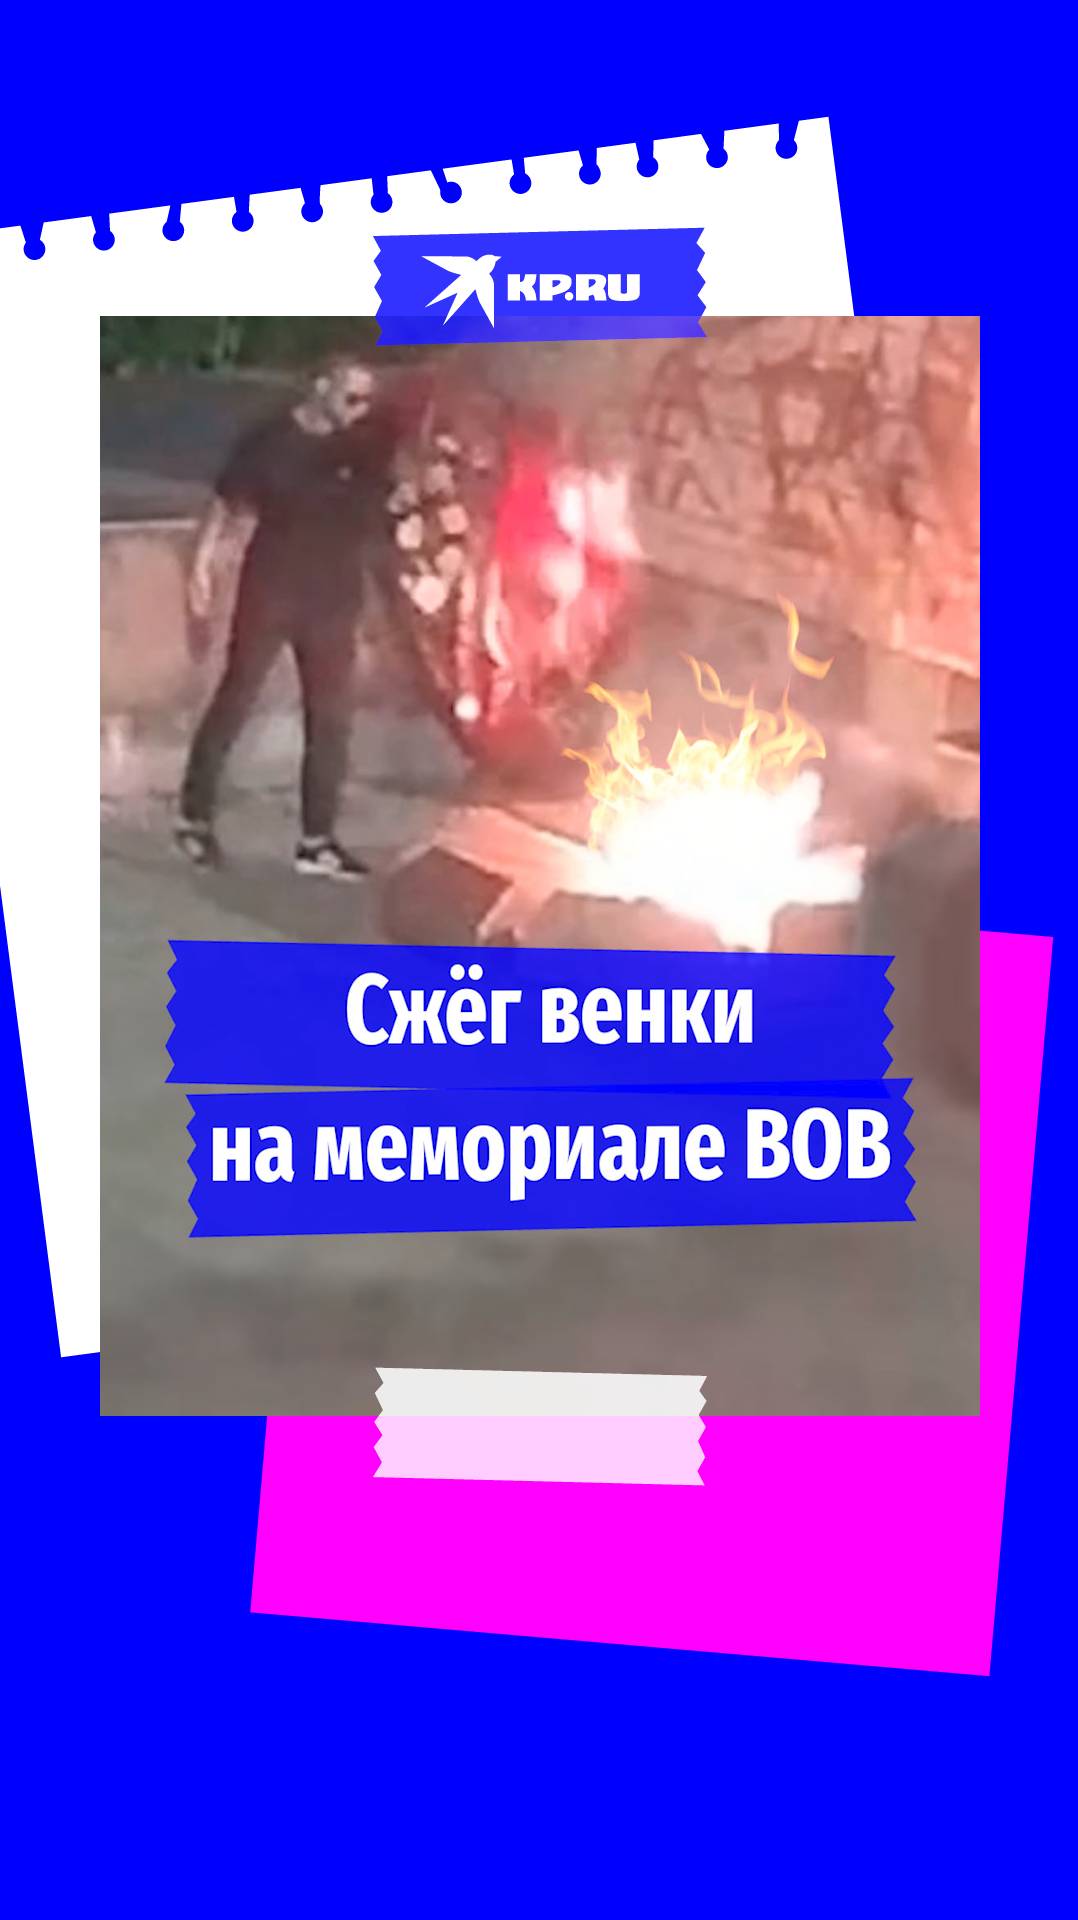 Мужчина сжёг венки на мемориале ВОВ в Старой Руссе